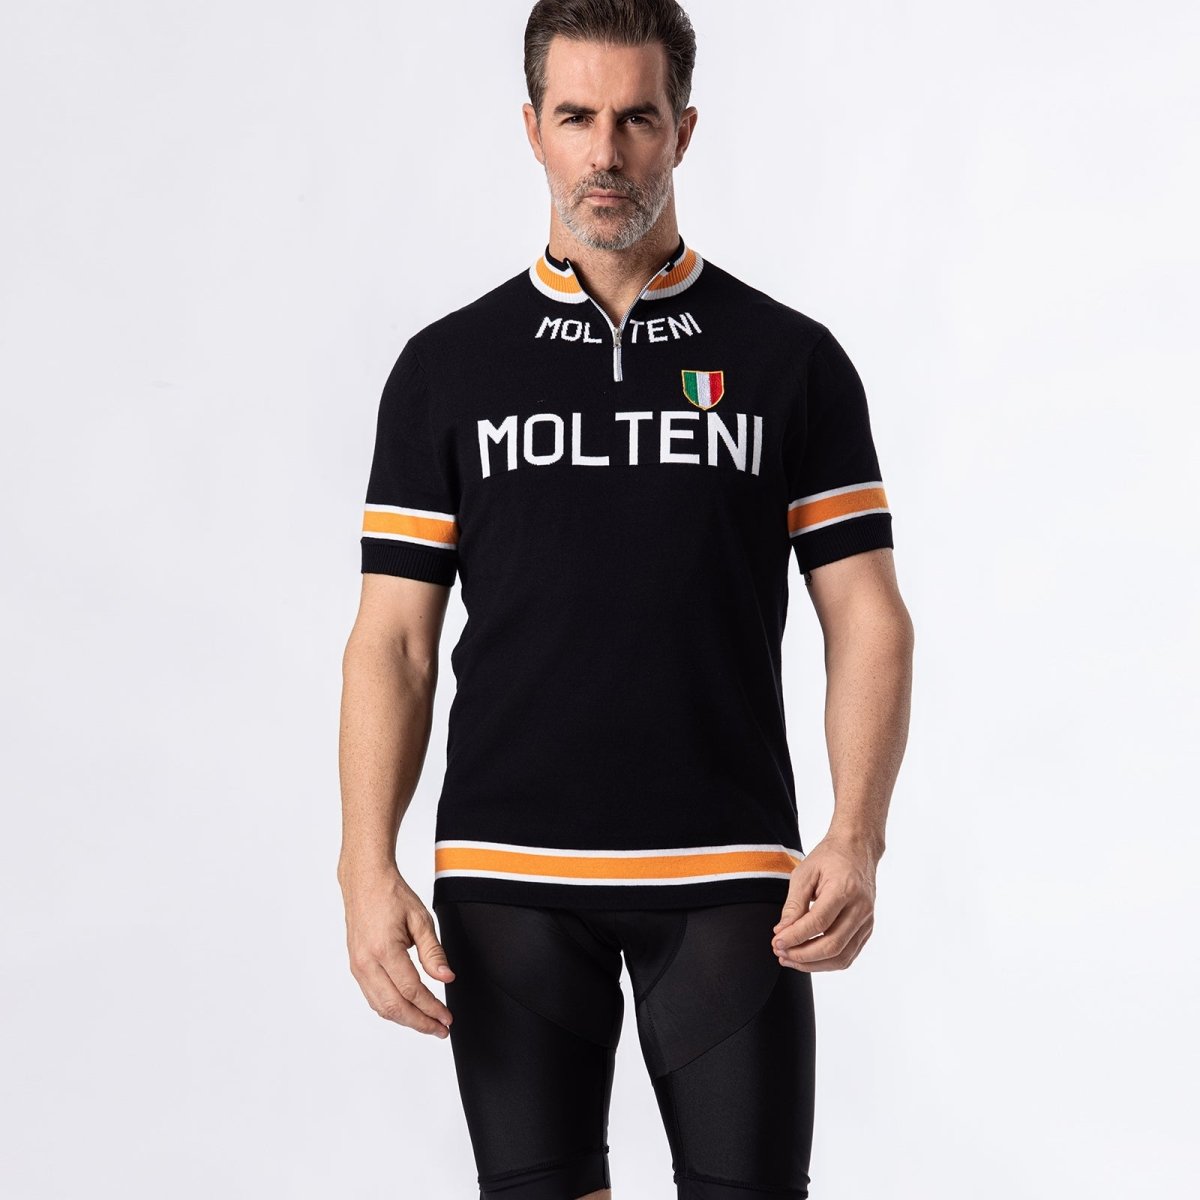 Black Molteni Deluxe Merino Wool Retro Cycling Jersey Retro Wool Cycling Jersey- Retro Peloton